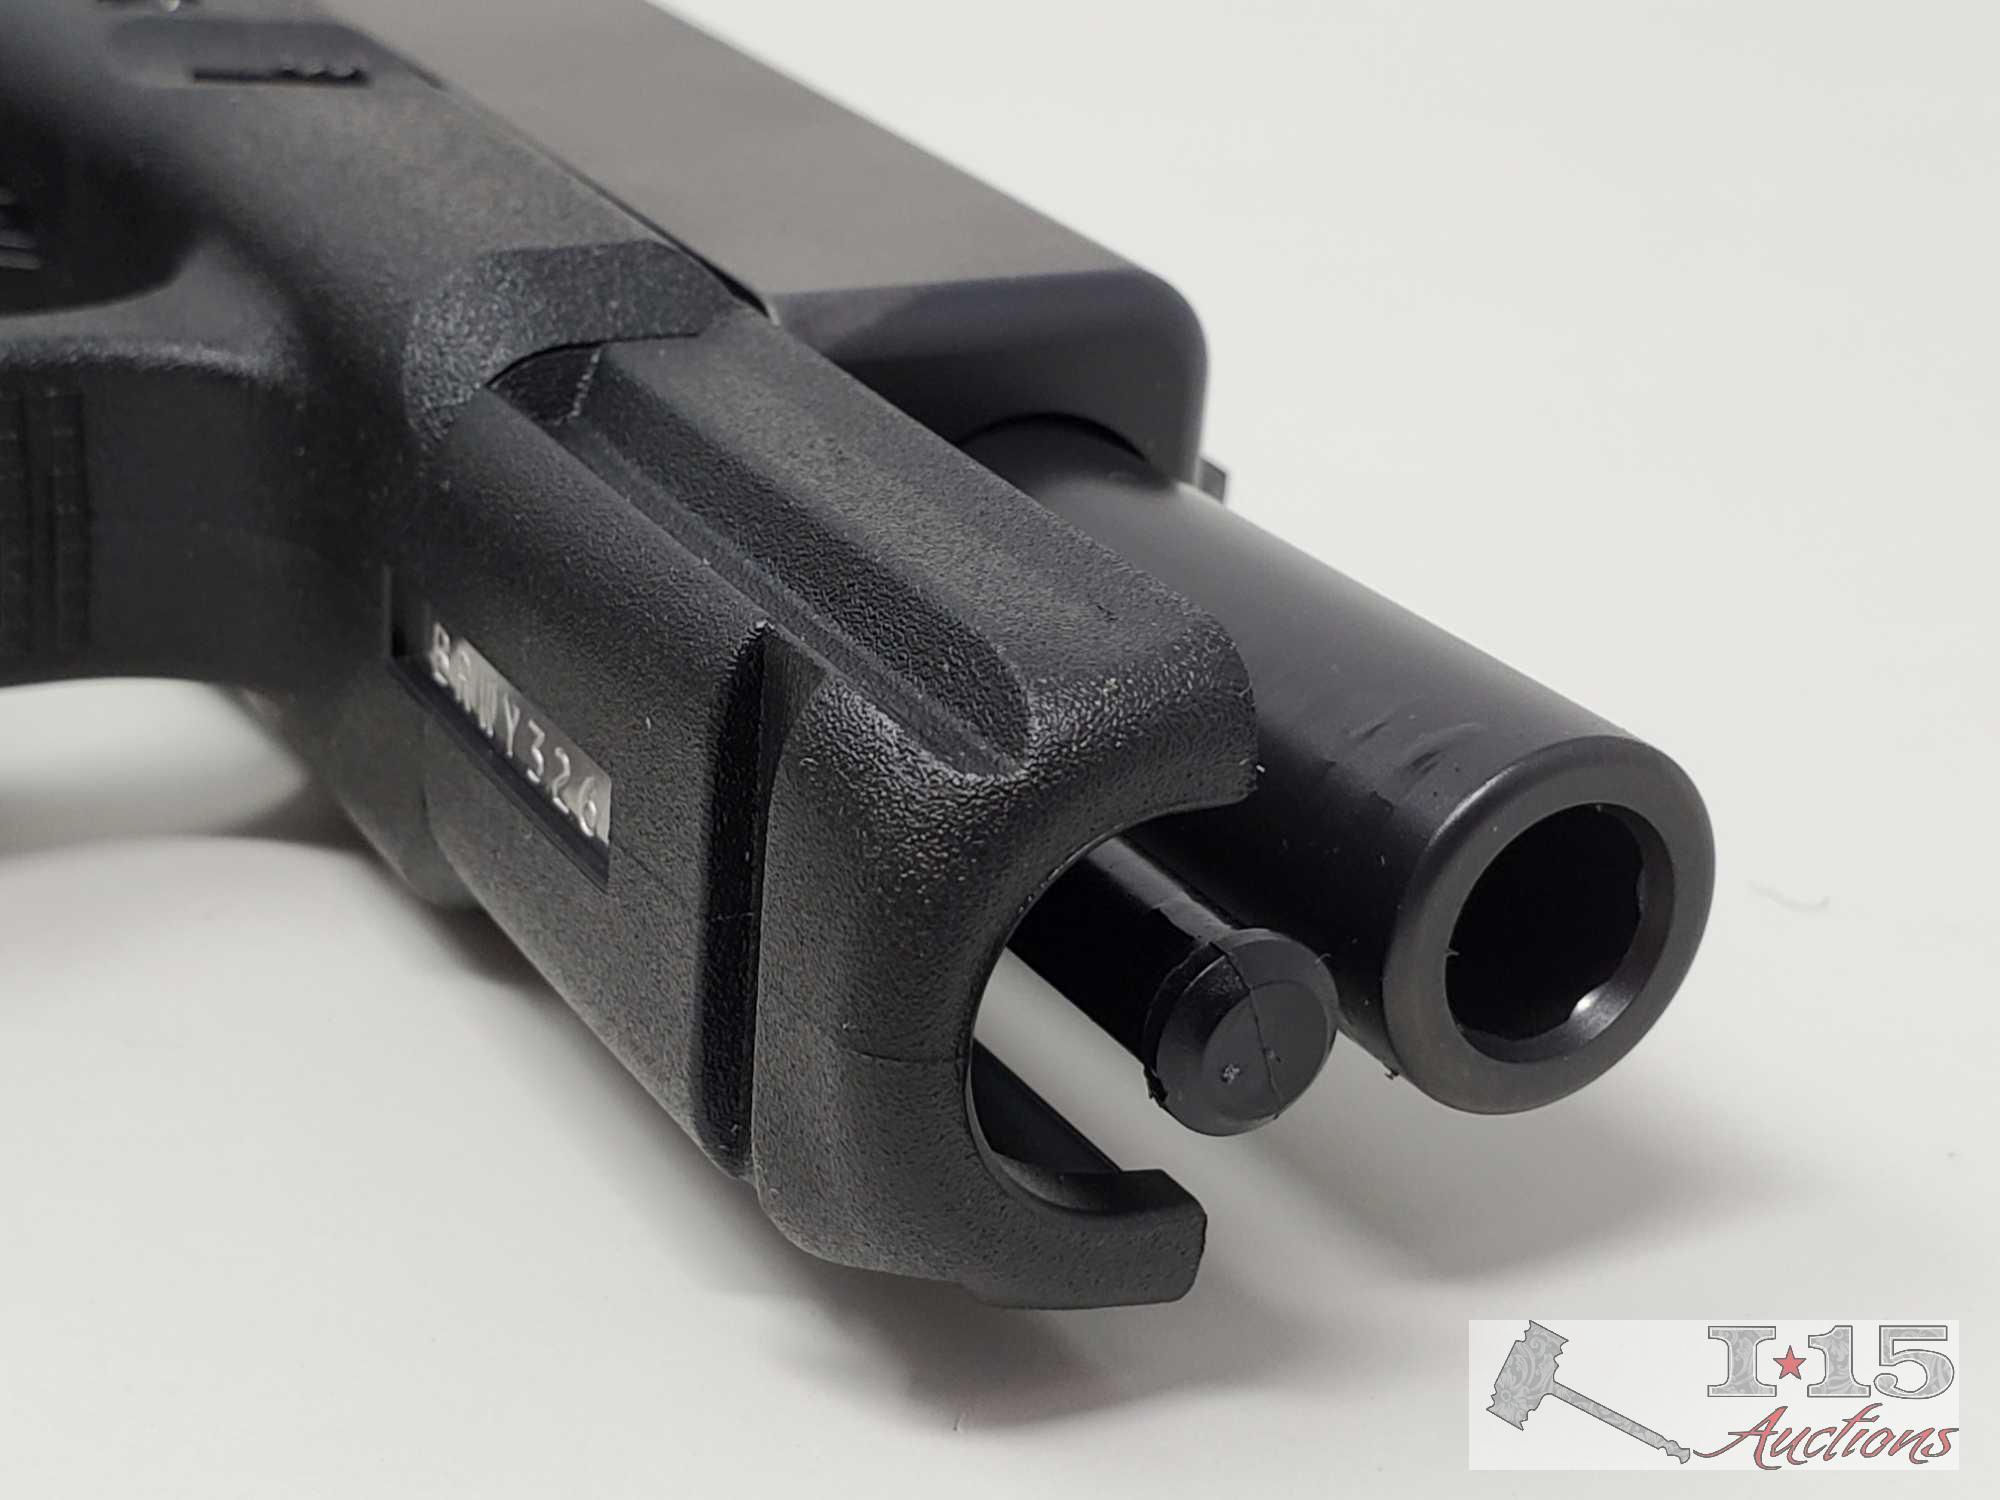 NEW Glock 19 9mm Semi-Auto Pistol